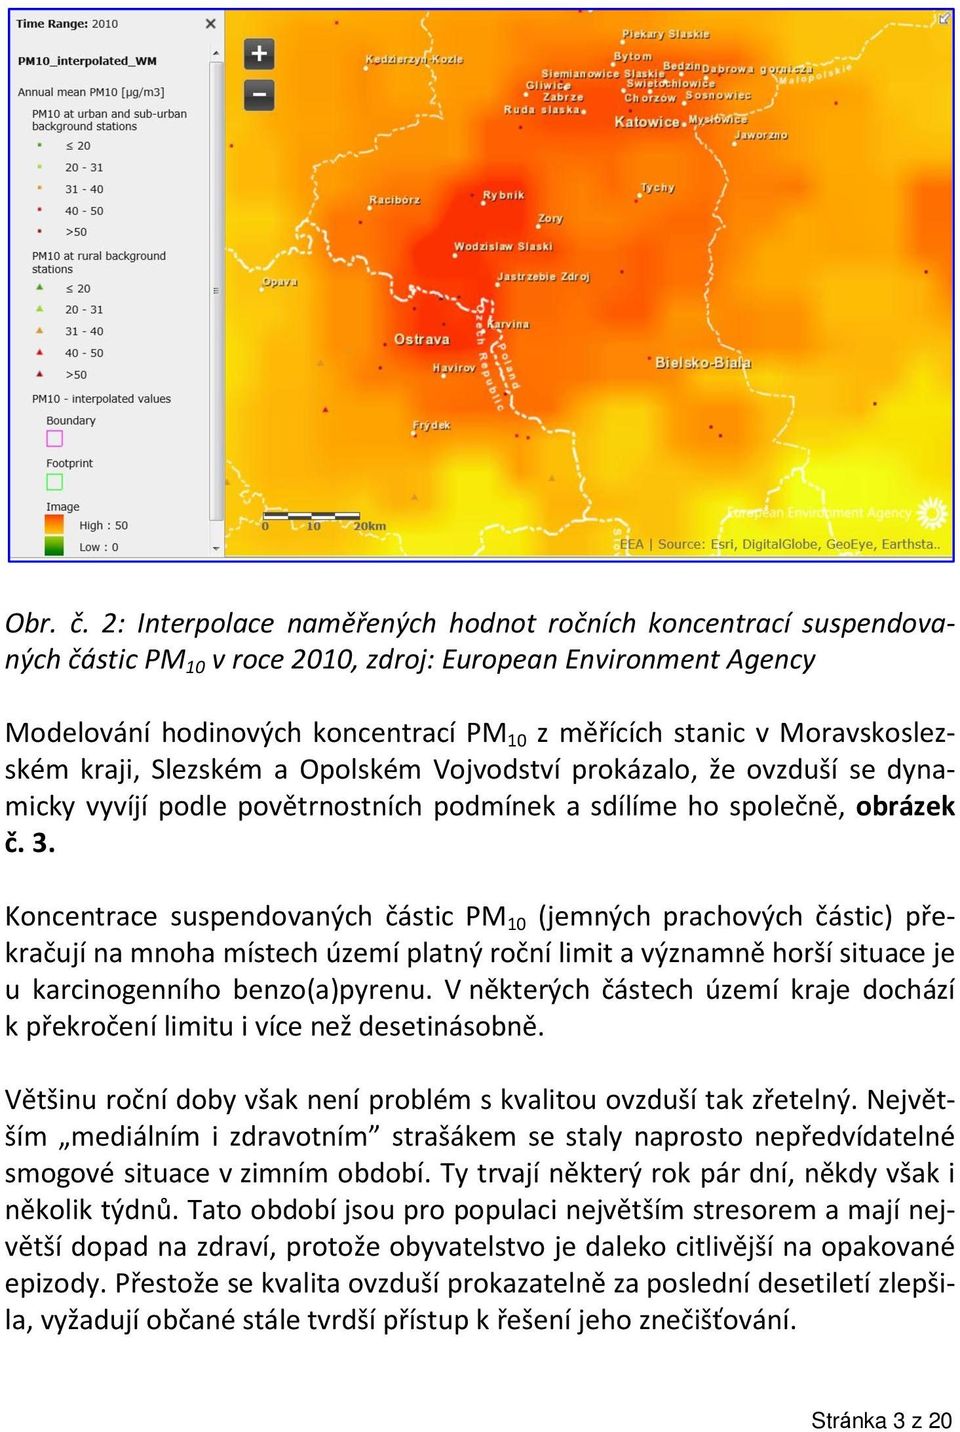 Moravskoslezském kraji, Slezském a Opolském Vojvodství prokázalo, že ovzduší se dynamicky vyvíjí podle povětrnostních podmínek a sdílíme ho společně, obrázek č. 3.